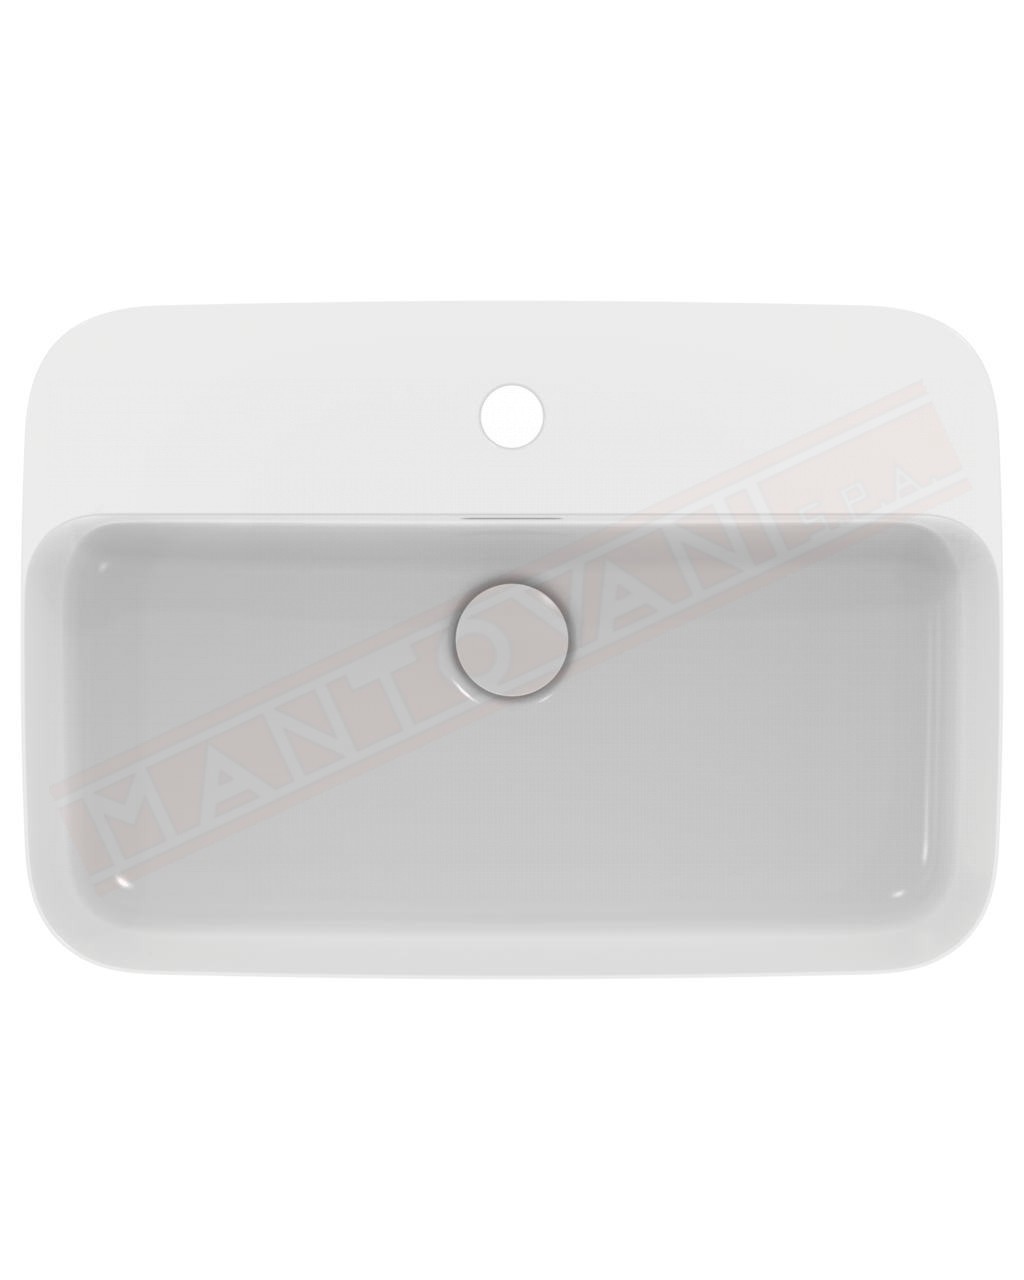 Ideal Standard Ipalyss lavabo da appoggio rettangolare 55x38 cm con troppopieno e con foro rubinetto